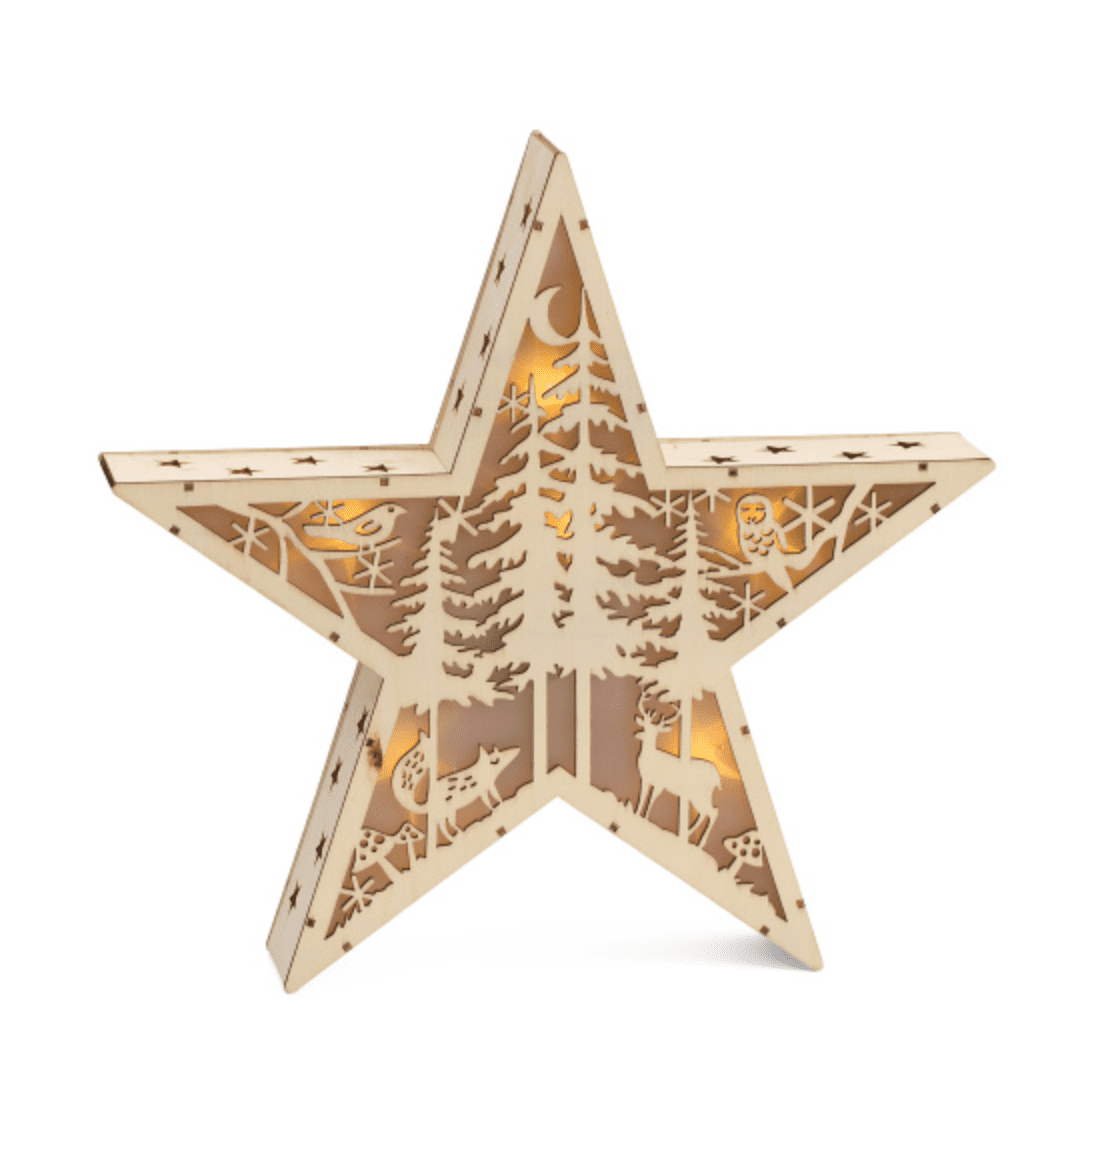 Estrella decorativa de madera tallada de T.J. Maxx con iluminación sobre un fondo blanco en blanco